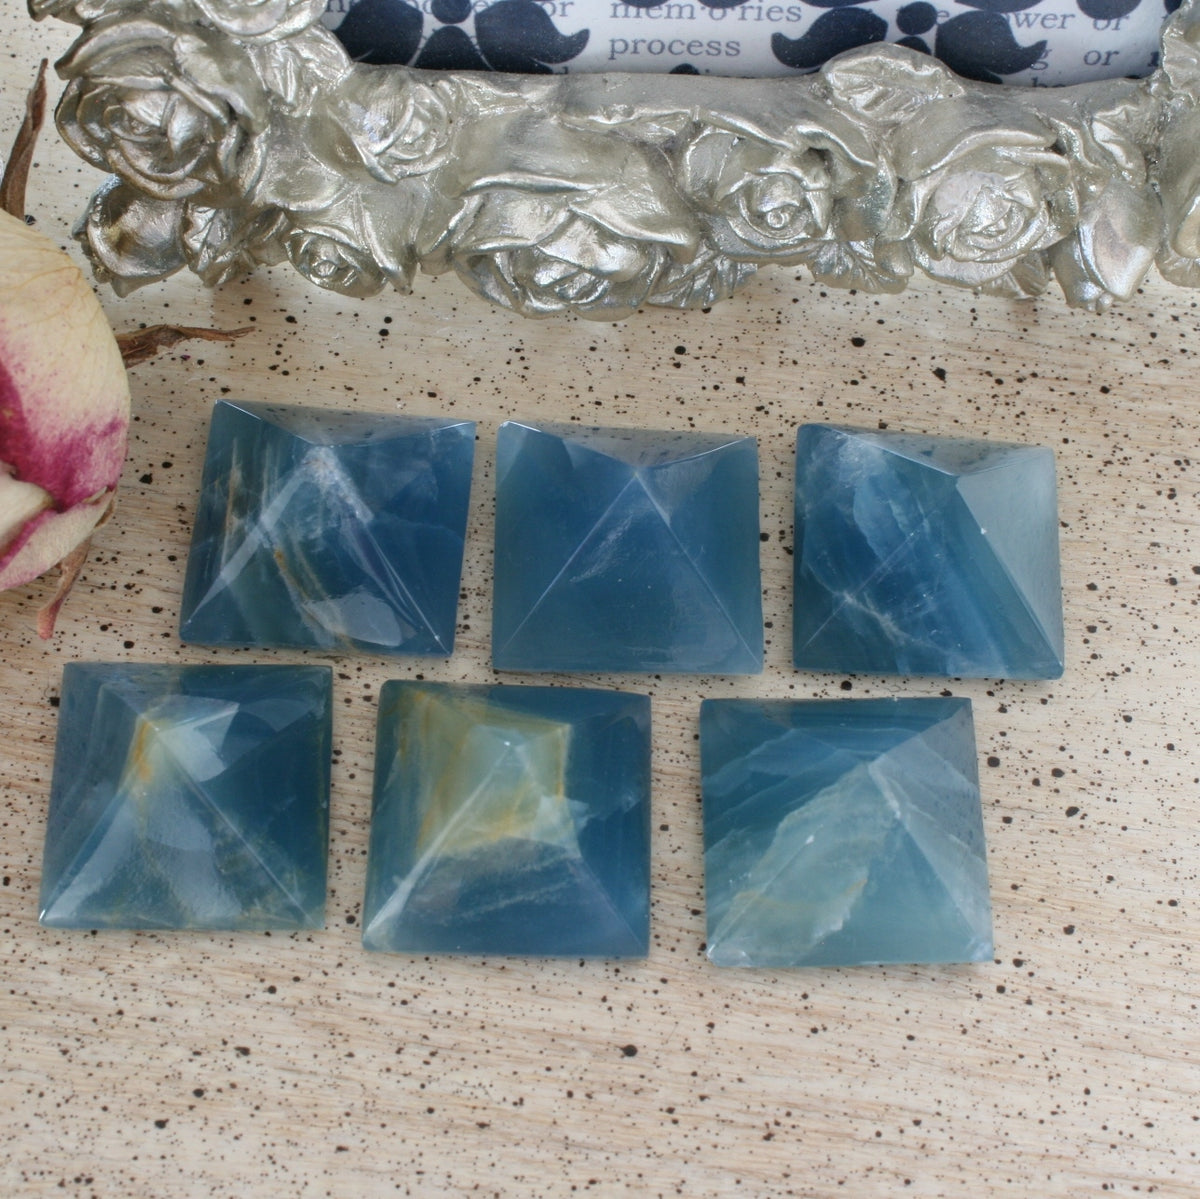 Blue Calcite / Blue Onyx Pyramid from Argentina, also called Lemurian Aquatine Calcite, LGPY8